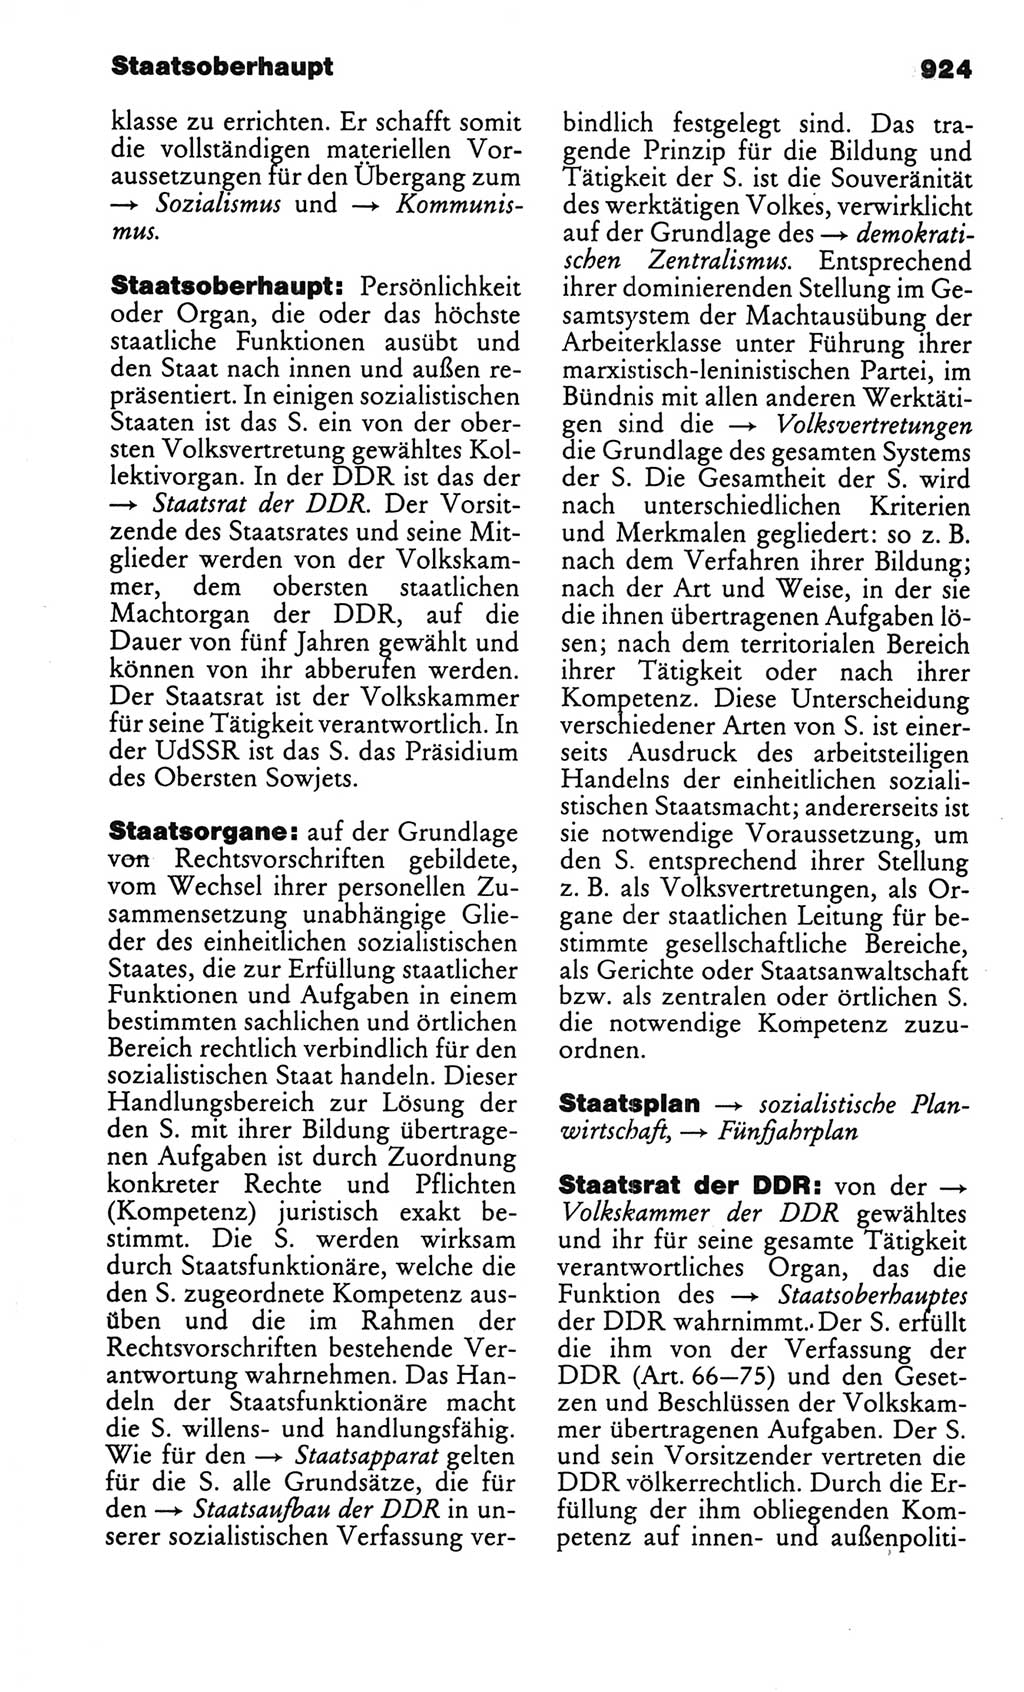 Kleines politisches Wörterbuch [Deutsche Demokratische Republik (DDR)] 1986, Seite 924 (Kl. pol. Wb. DDR 1986, S. 924)